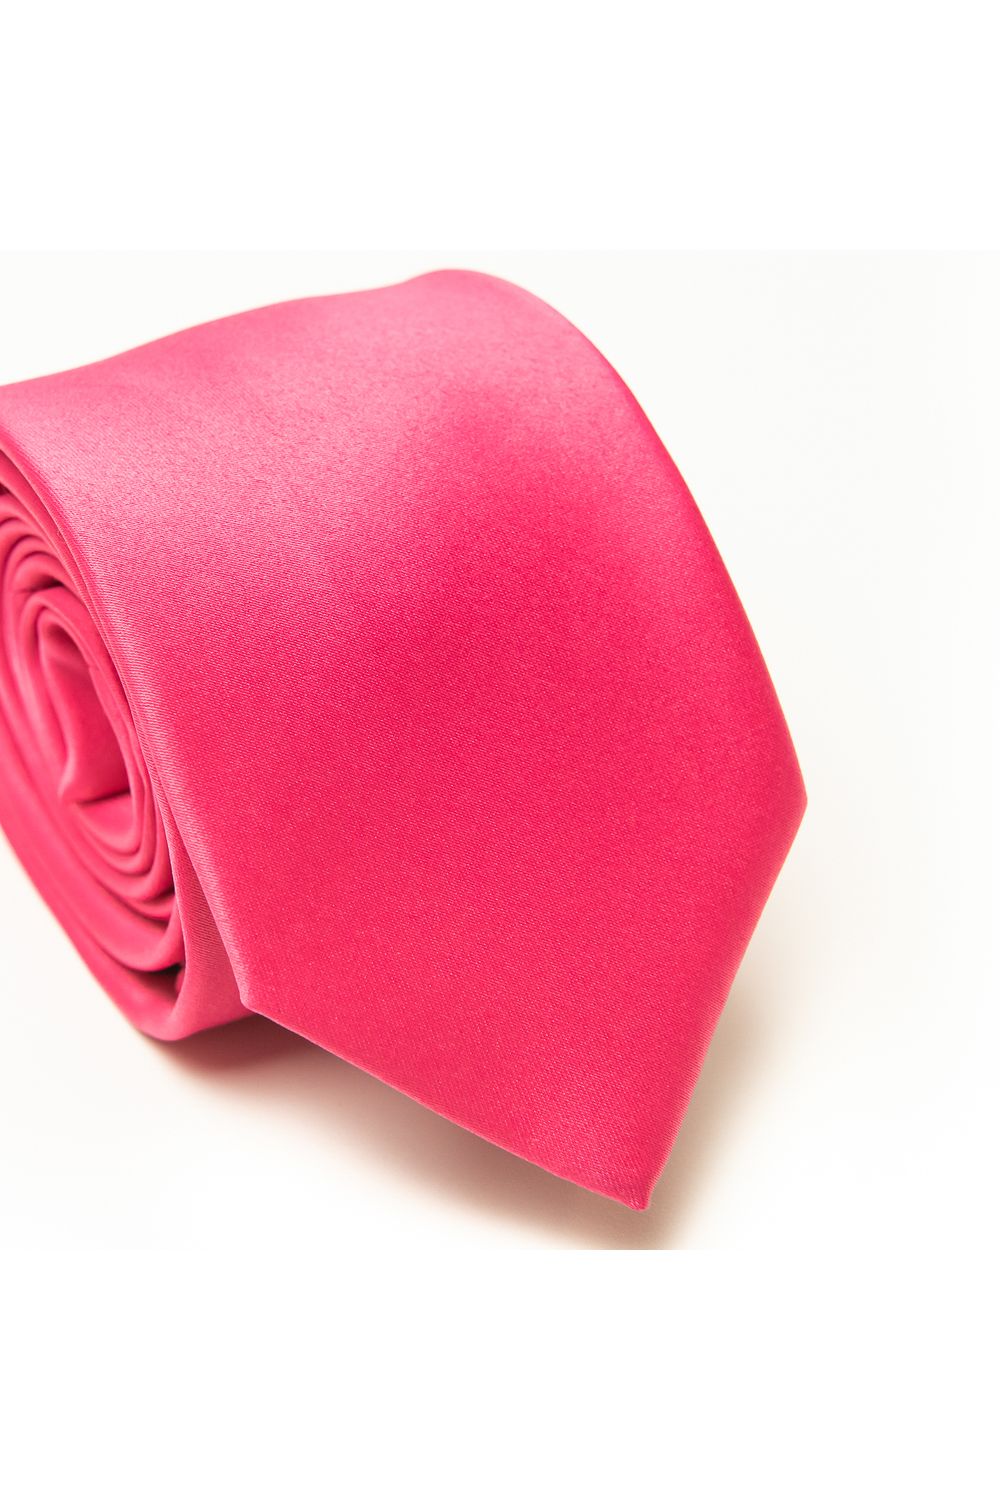 Gravata-Tradicional-lisa-Rosa-Pink